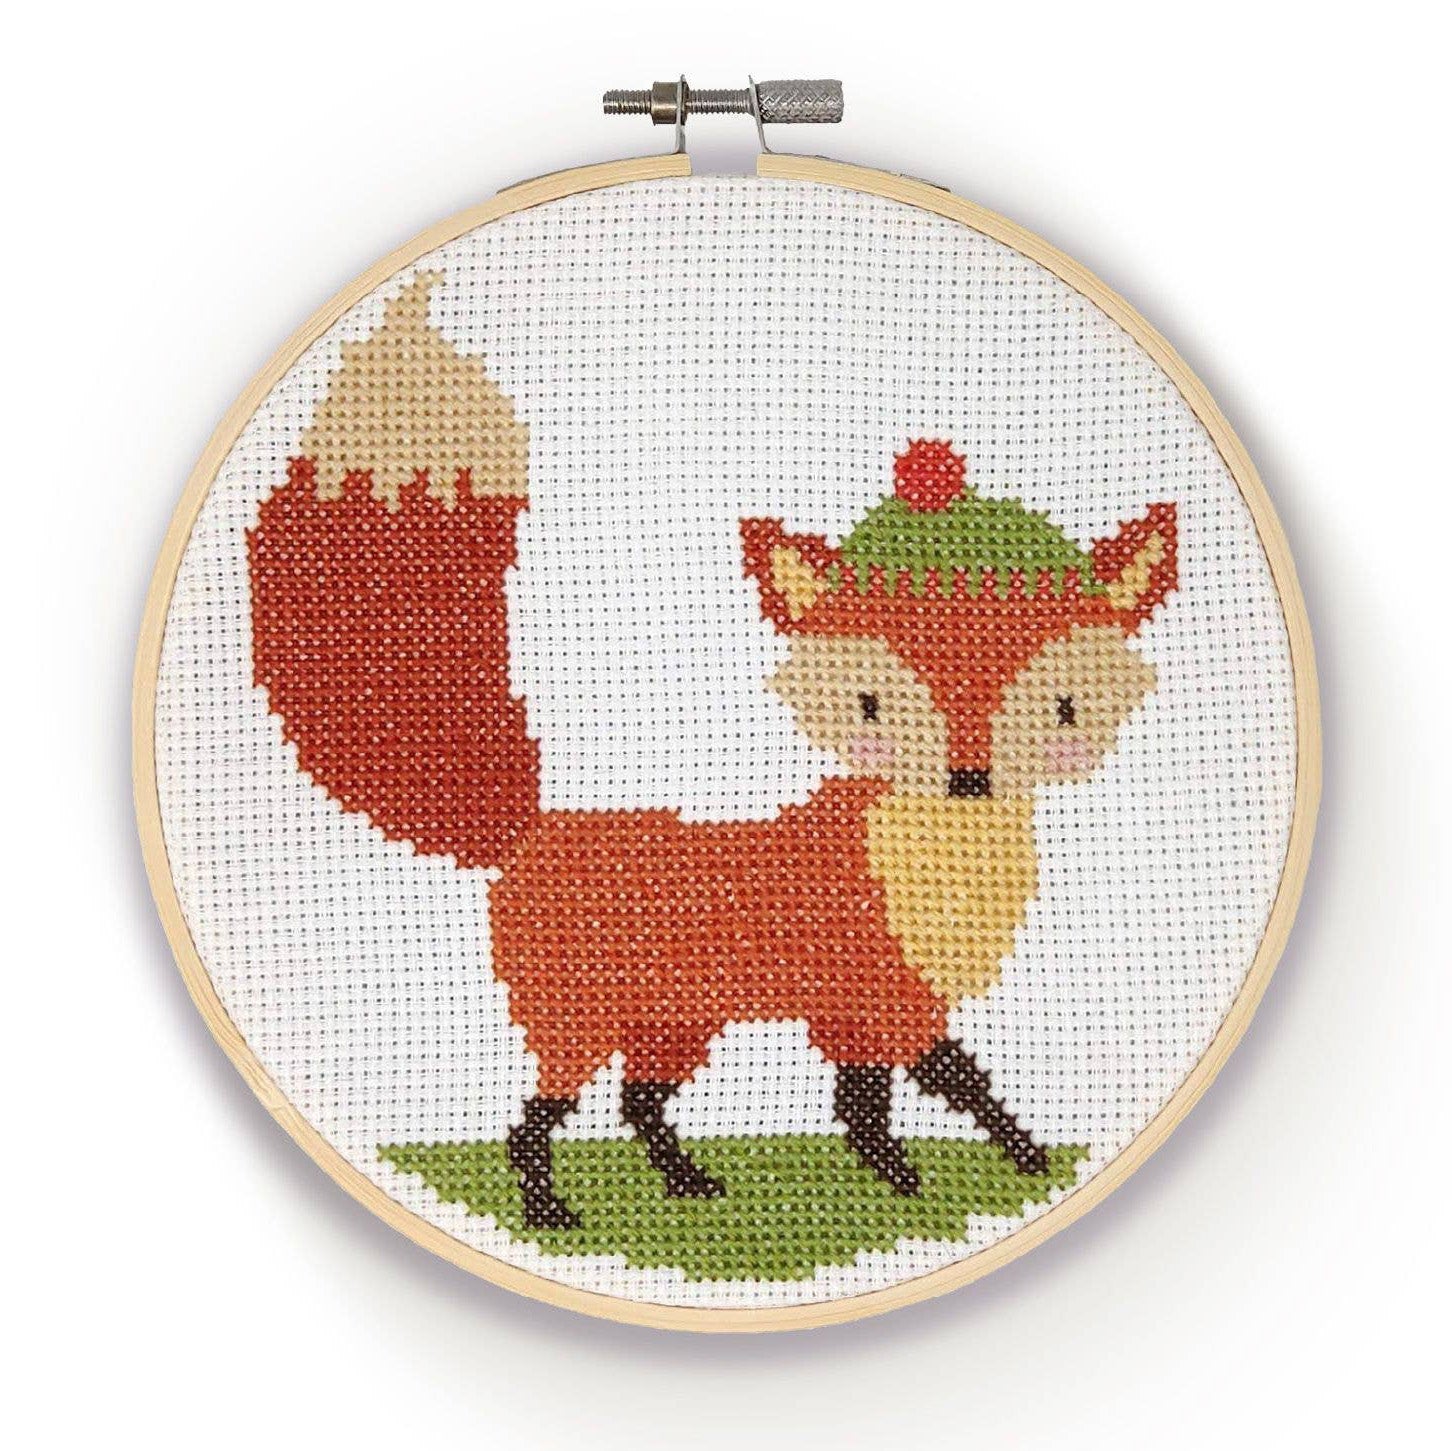 Safari Animals Cross Stitch Kits for Beginners. 5 Stamped Cross Stitch Kits  f